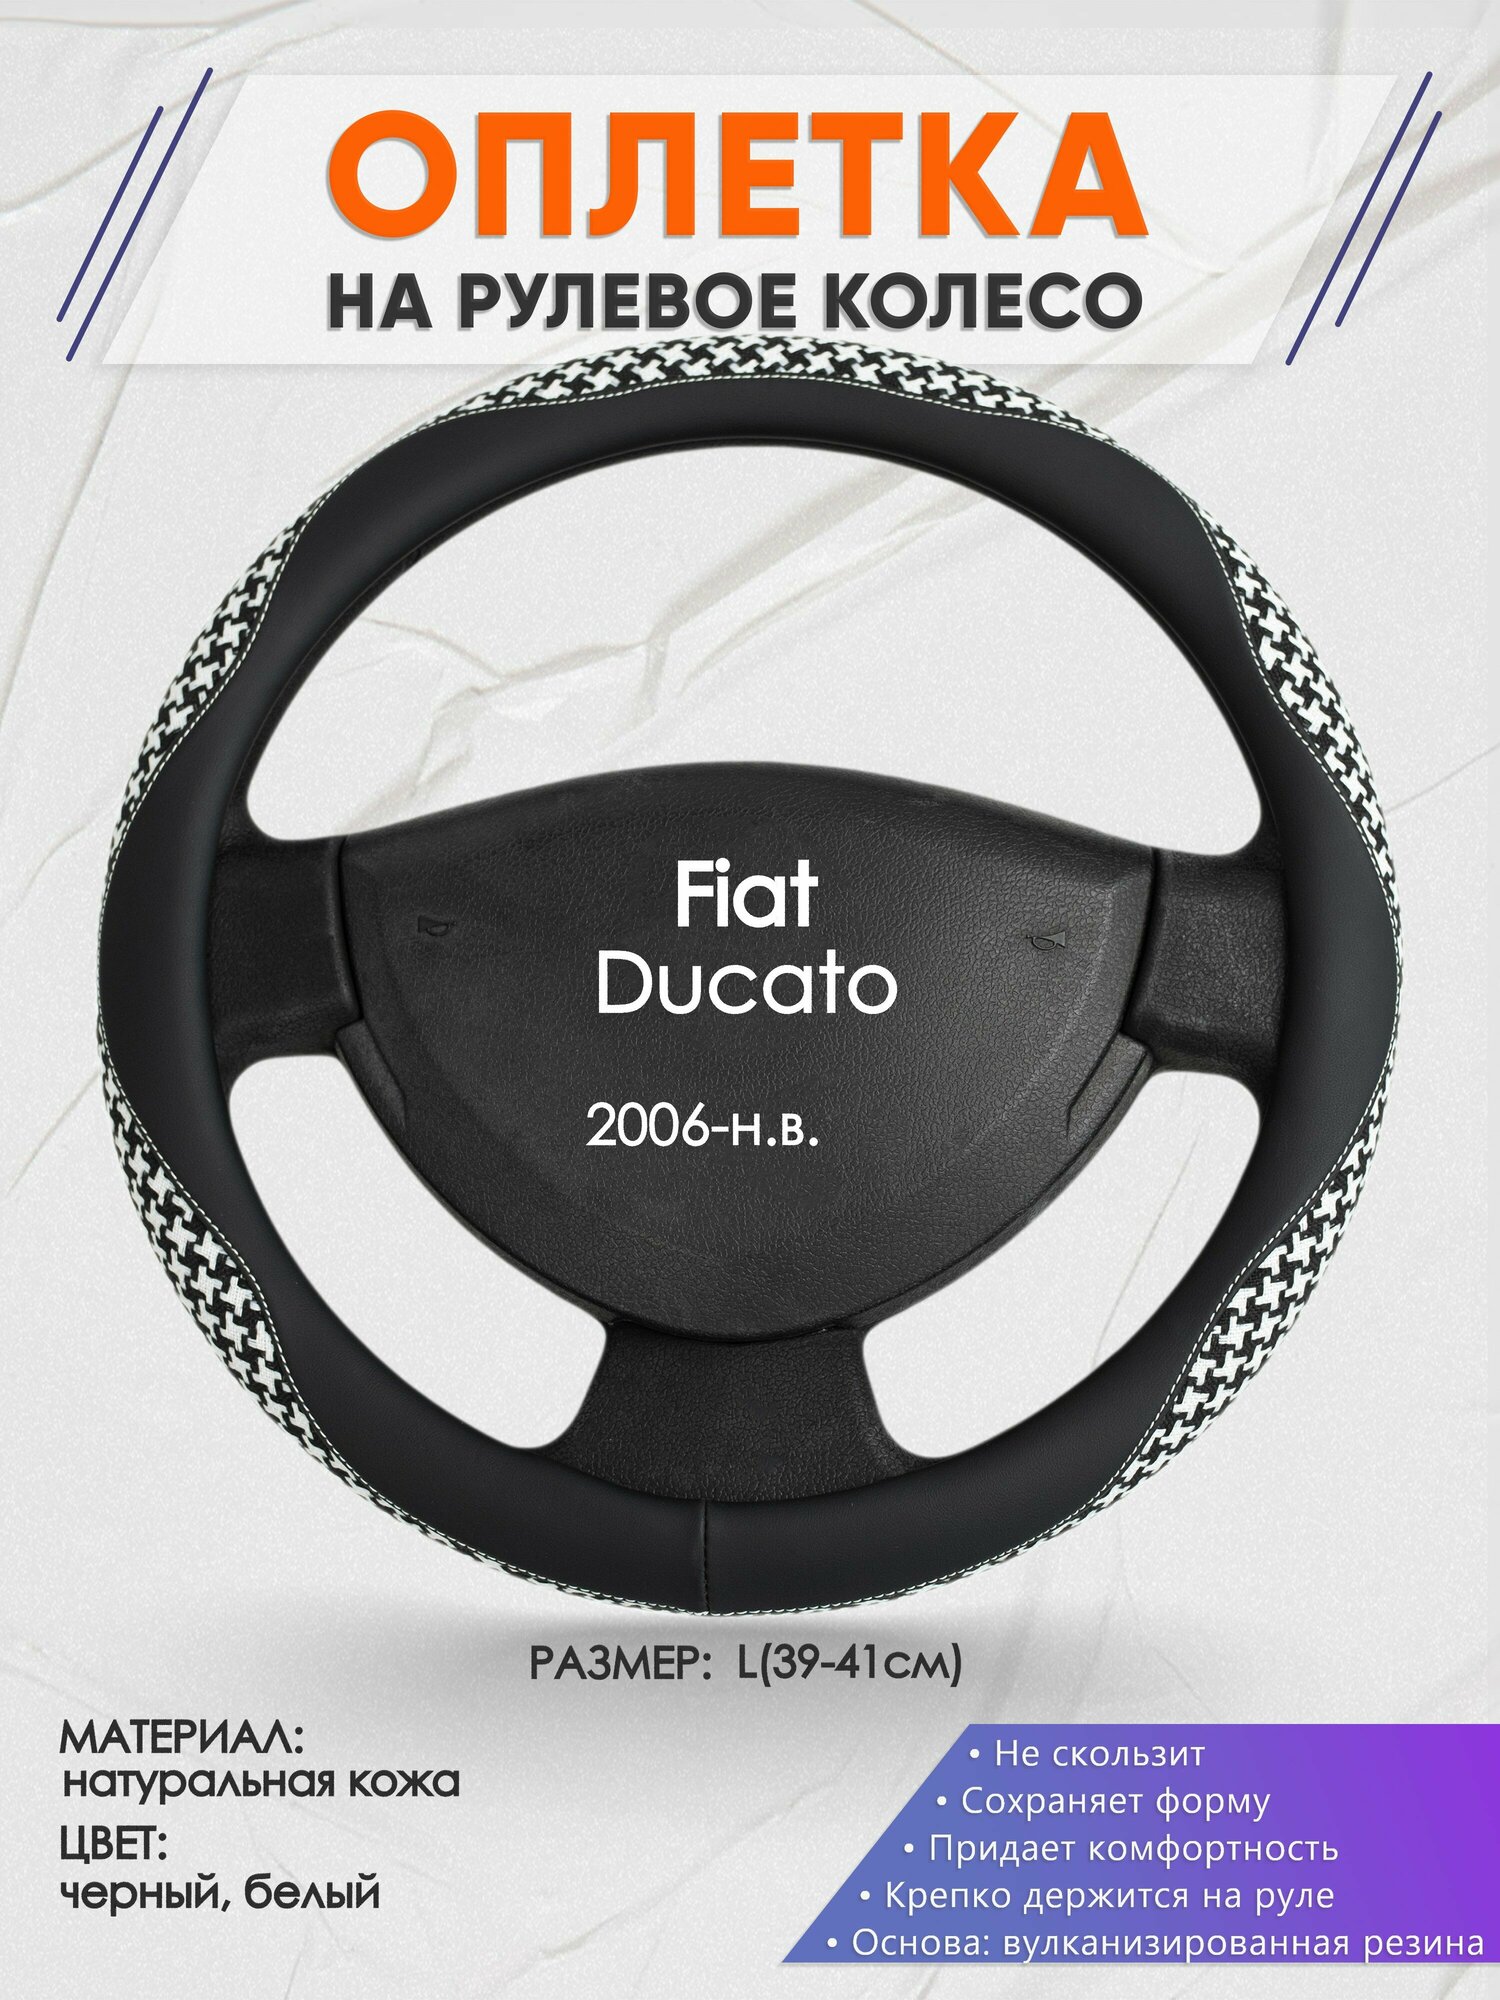 Оплетка на руль для Fiat Ducato (Фиат Дукато) 2006-н. в, L(39-41см), Натуральная кожа 21